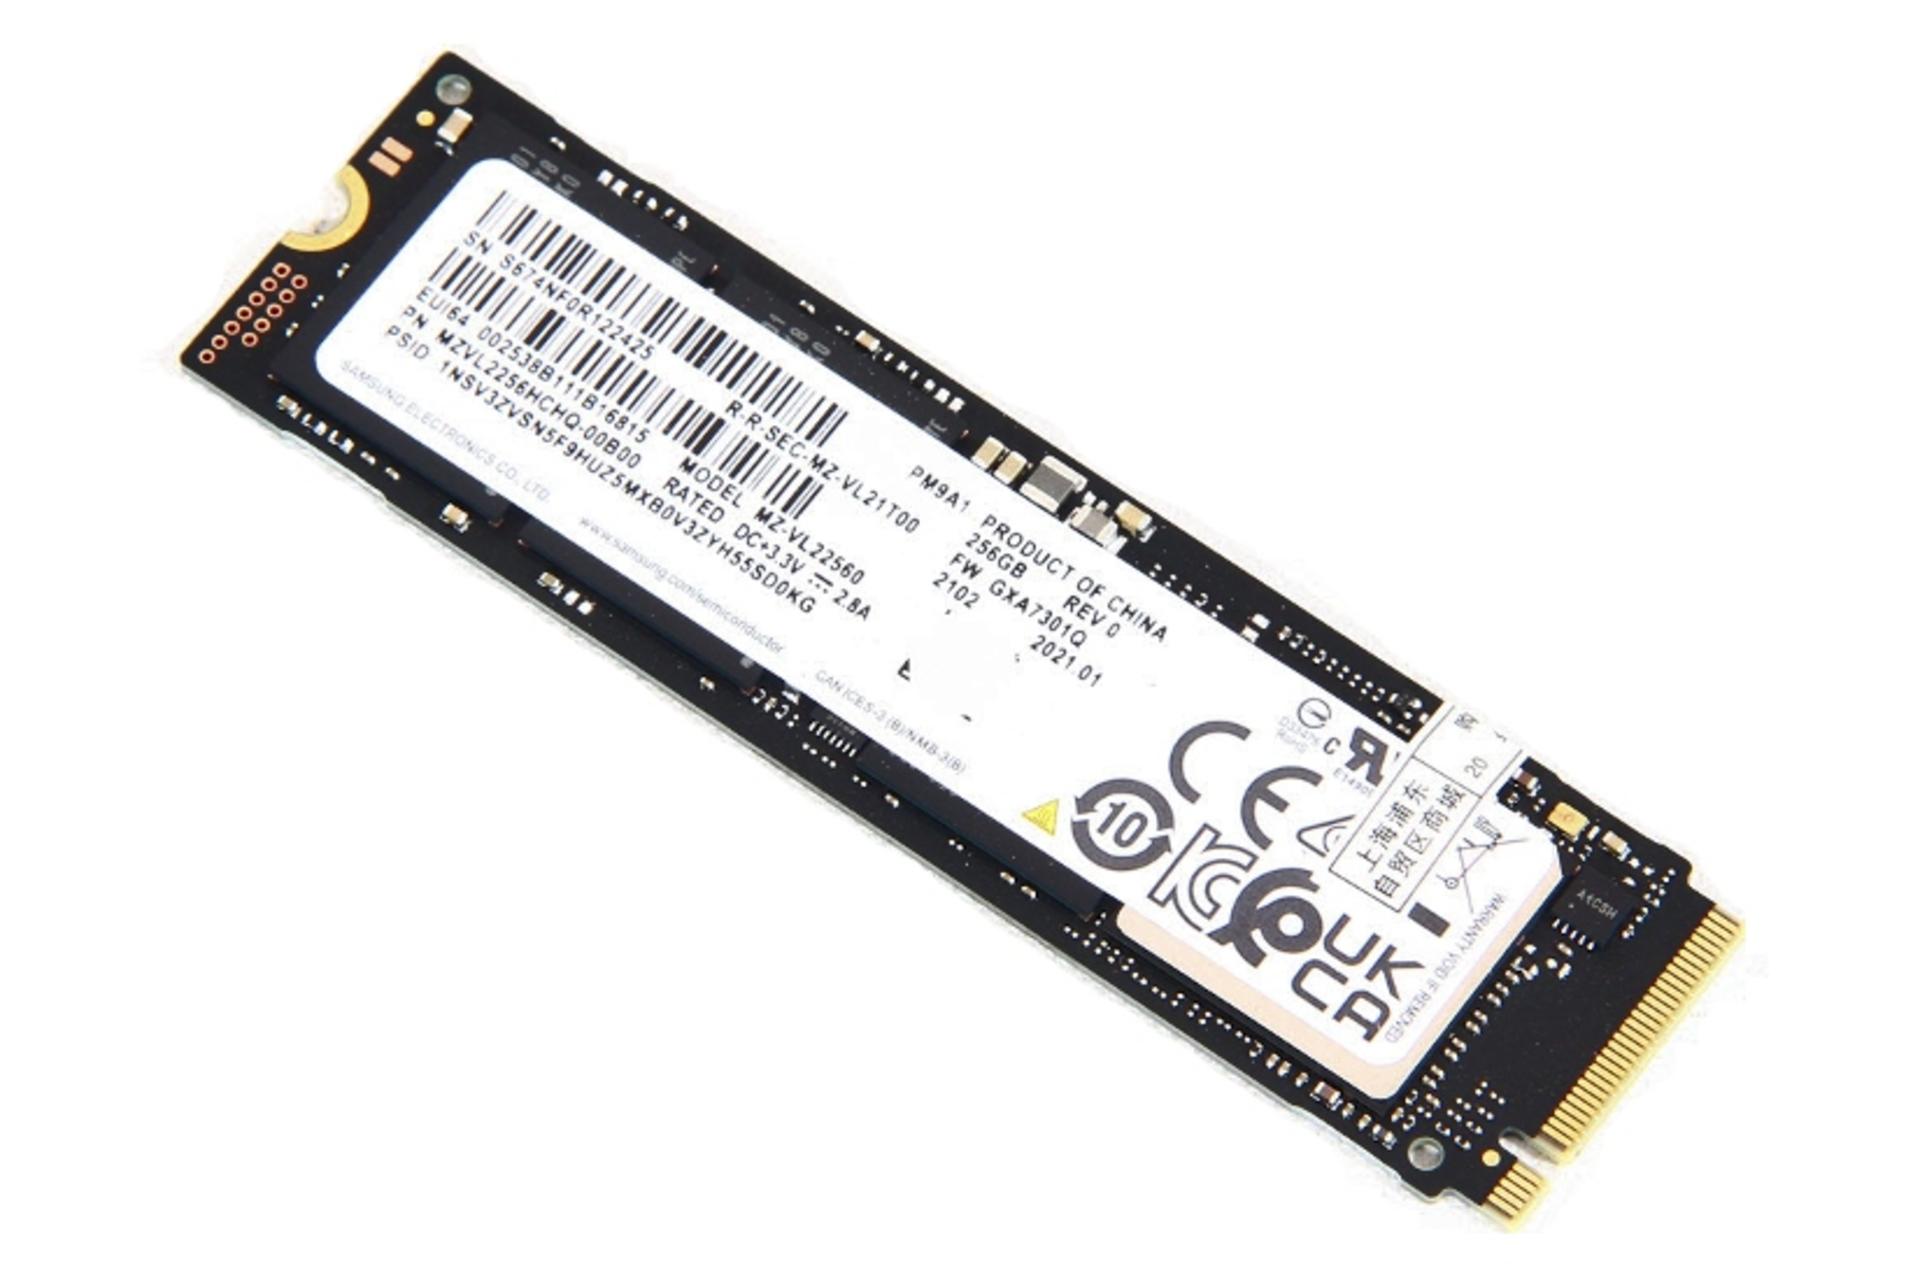 نمای روبرو SSD سامسونگ Samsung PM9A1 NVMe M.2 256GB ظرفیت 256 گیگابایت